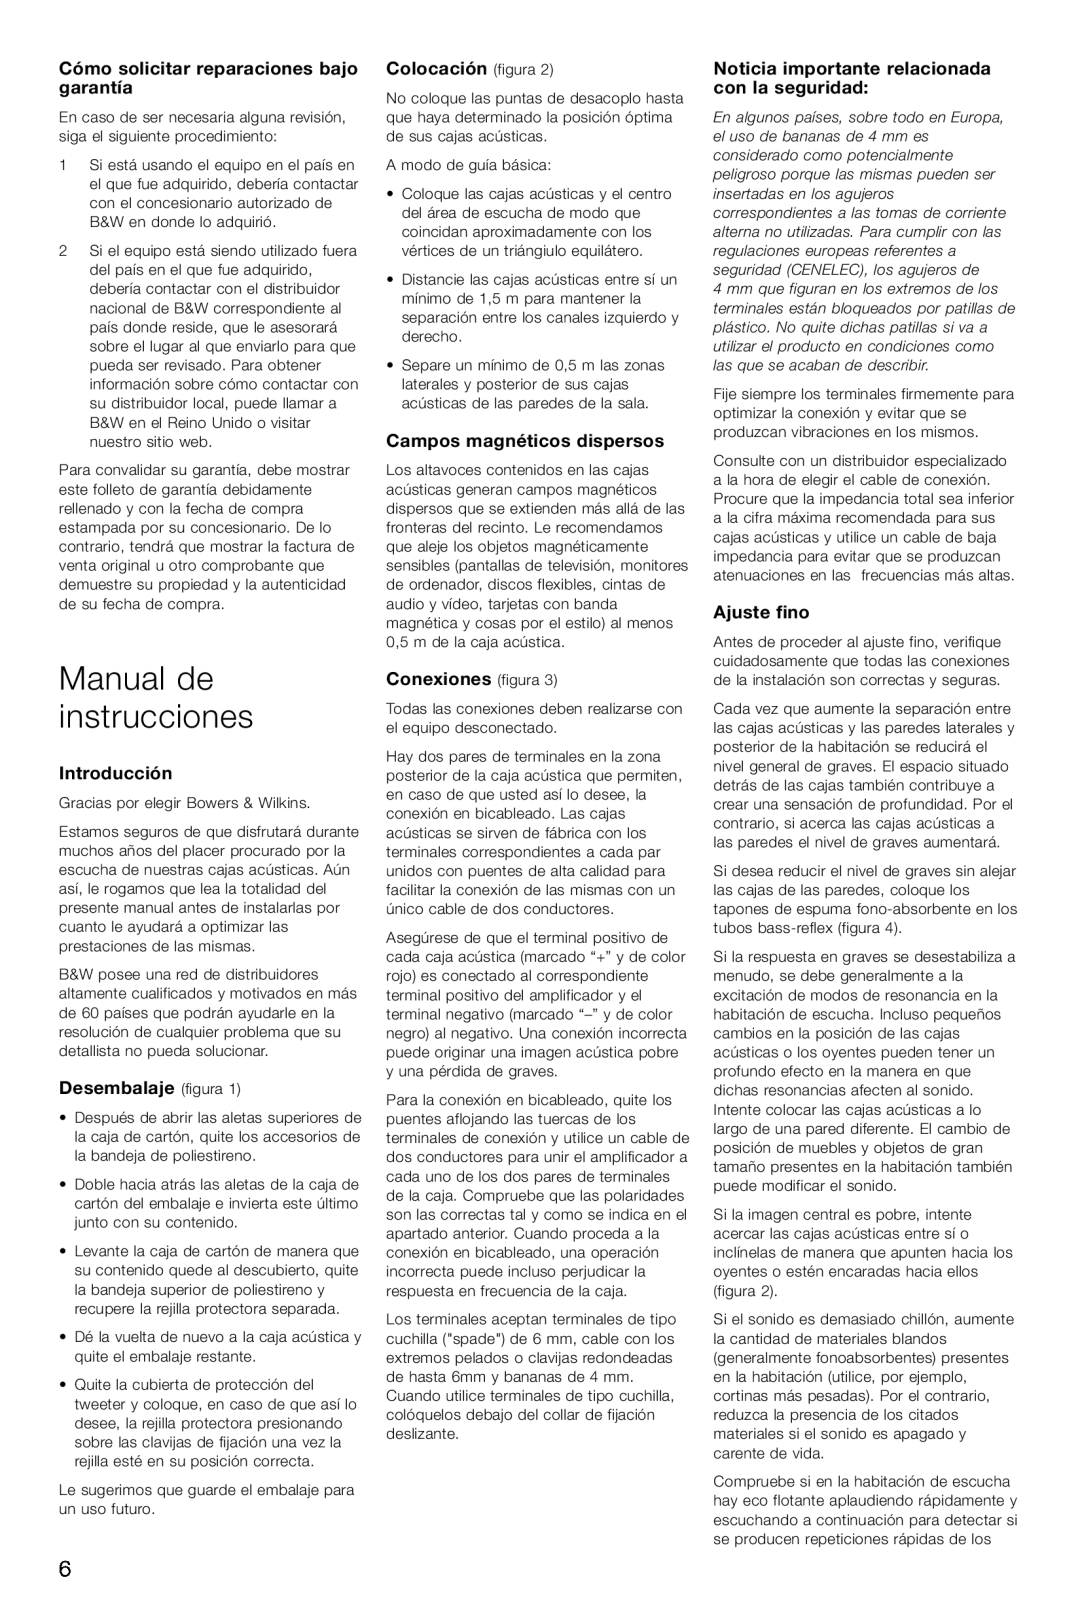 Bowers & Wilkins DM 604 S3 Manual de instrucciones, Cómo solicitar reparaciones bajo garantía, Introducción, Ajuste fino 